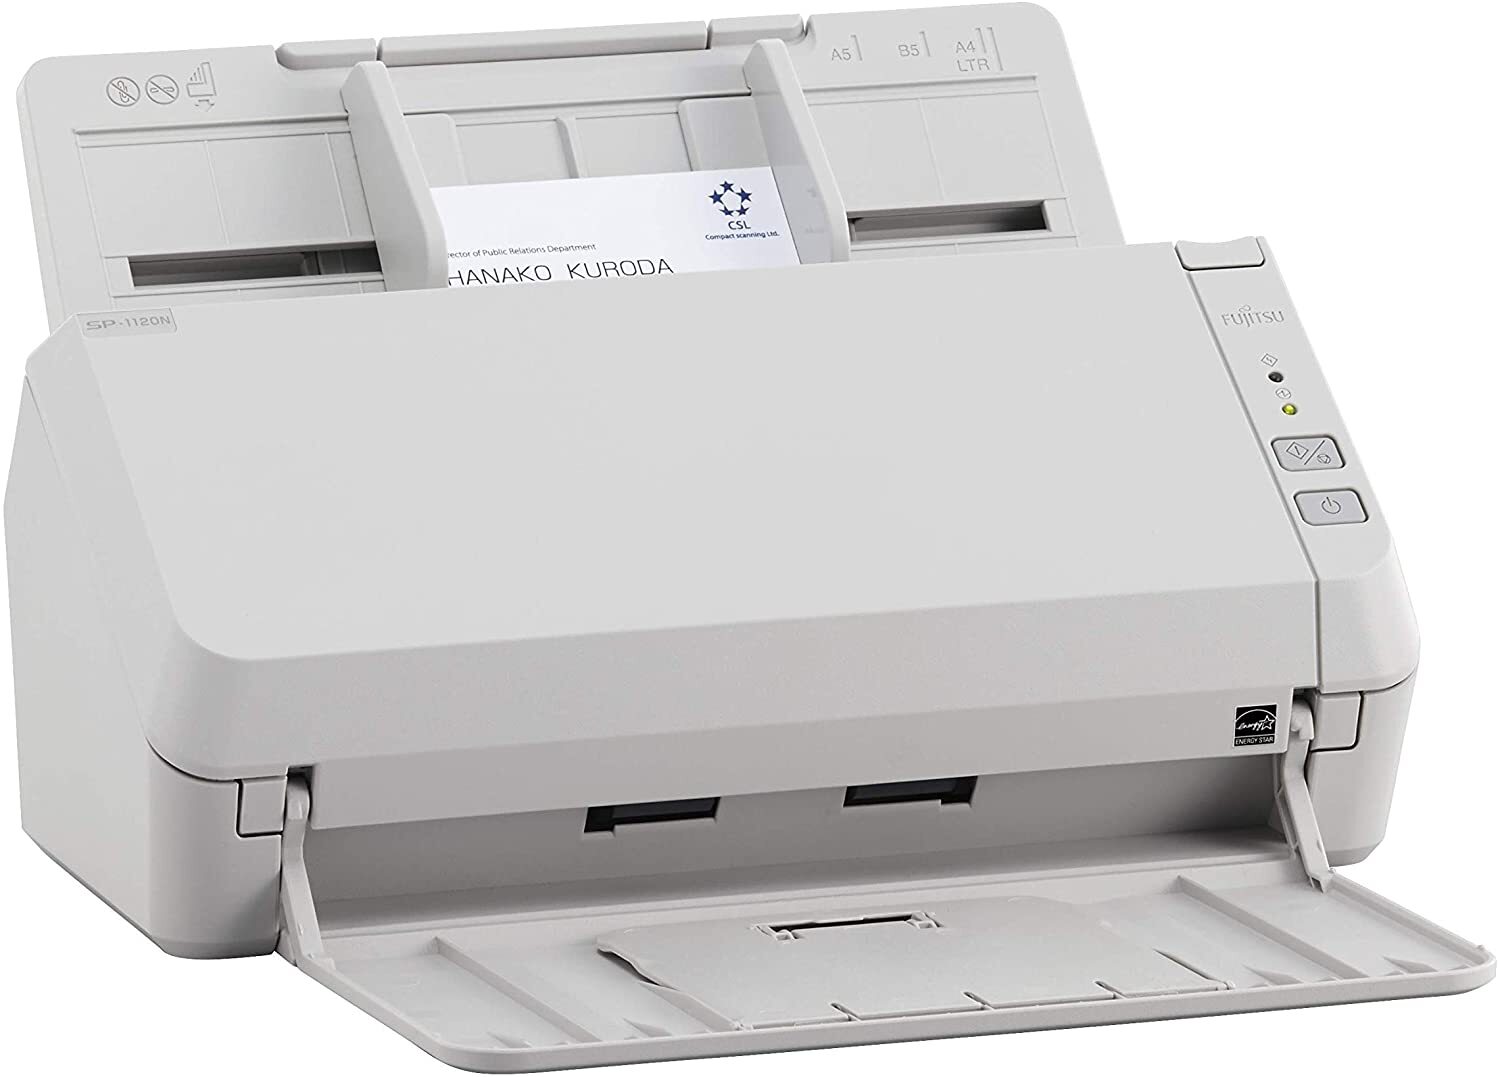  Документ-сканер A4 Fujitsu SP-1130N (PA03811-B021) фото